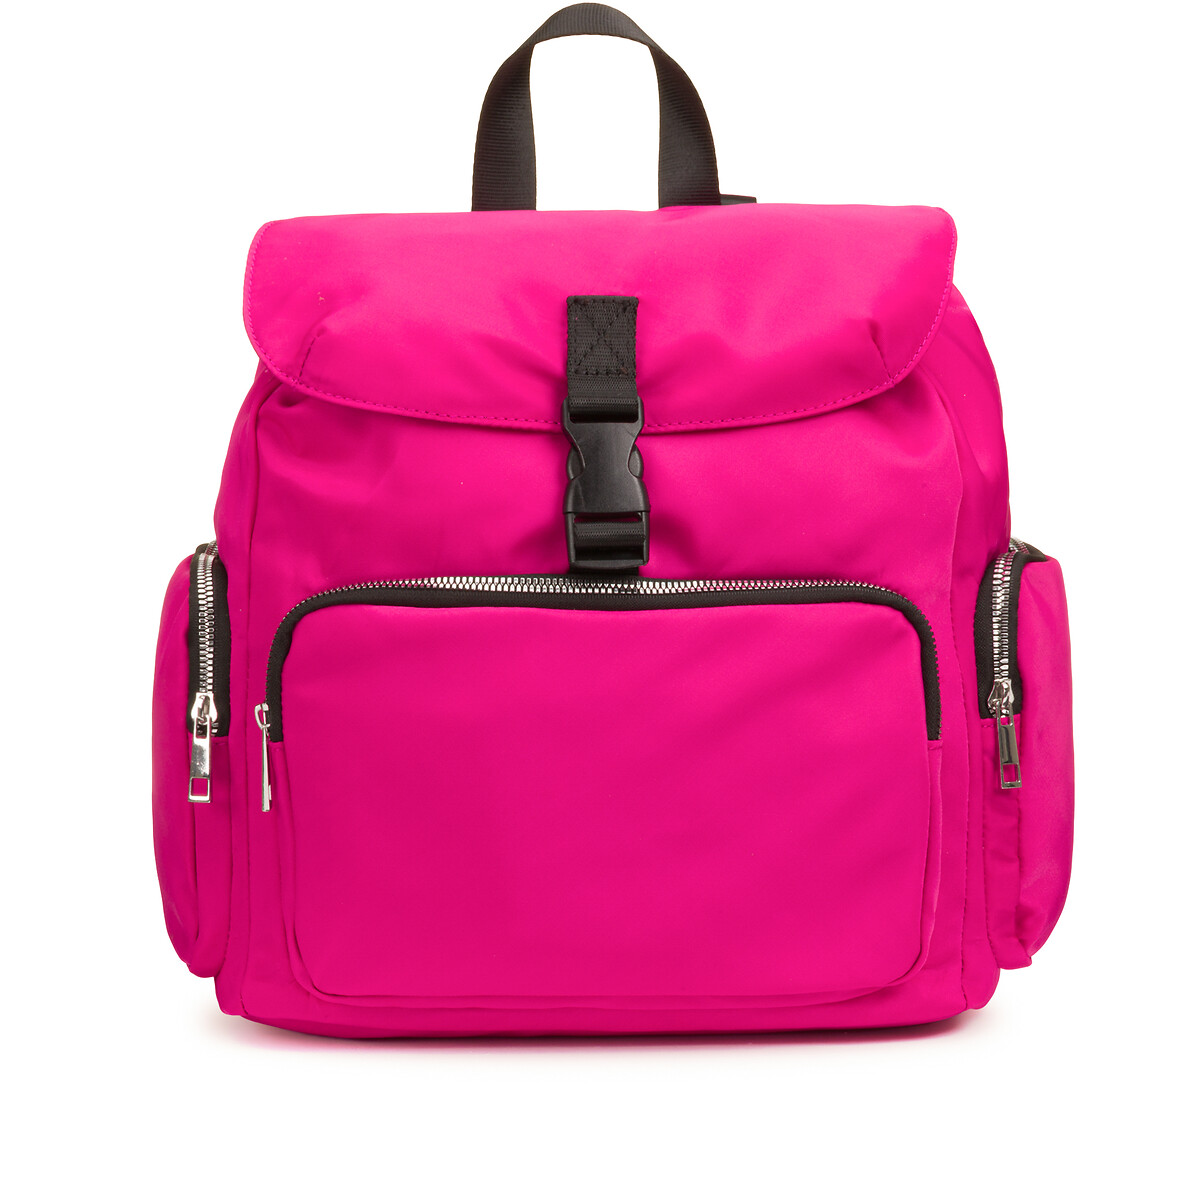 Рюкзак С тремя карманами единый размер розовый LaRedoute - фото 2